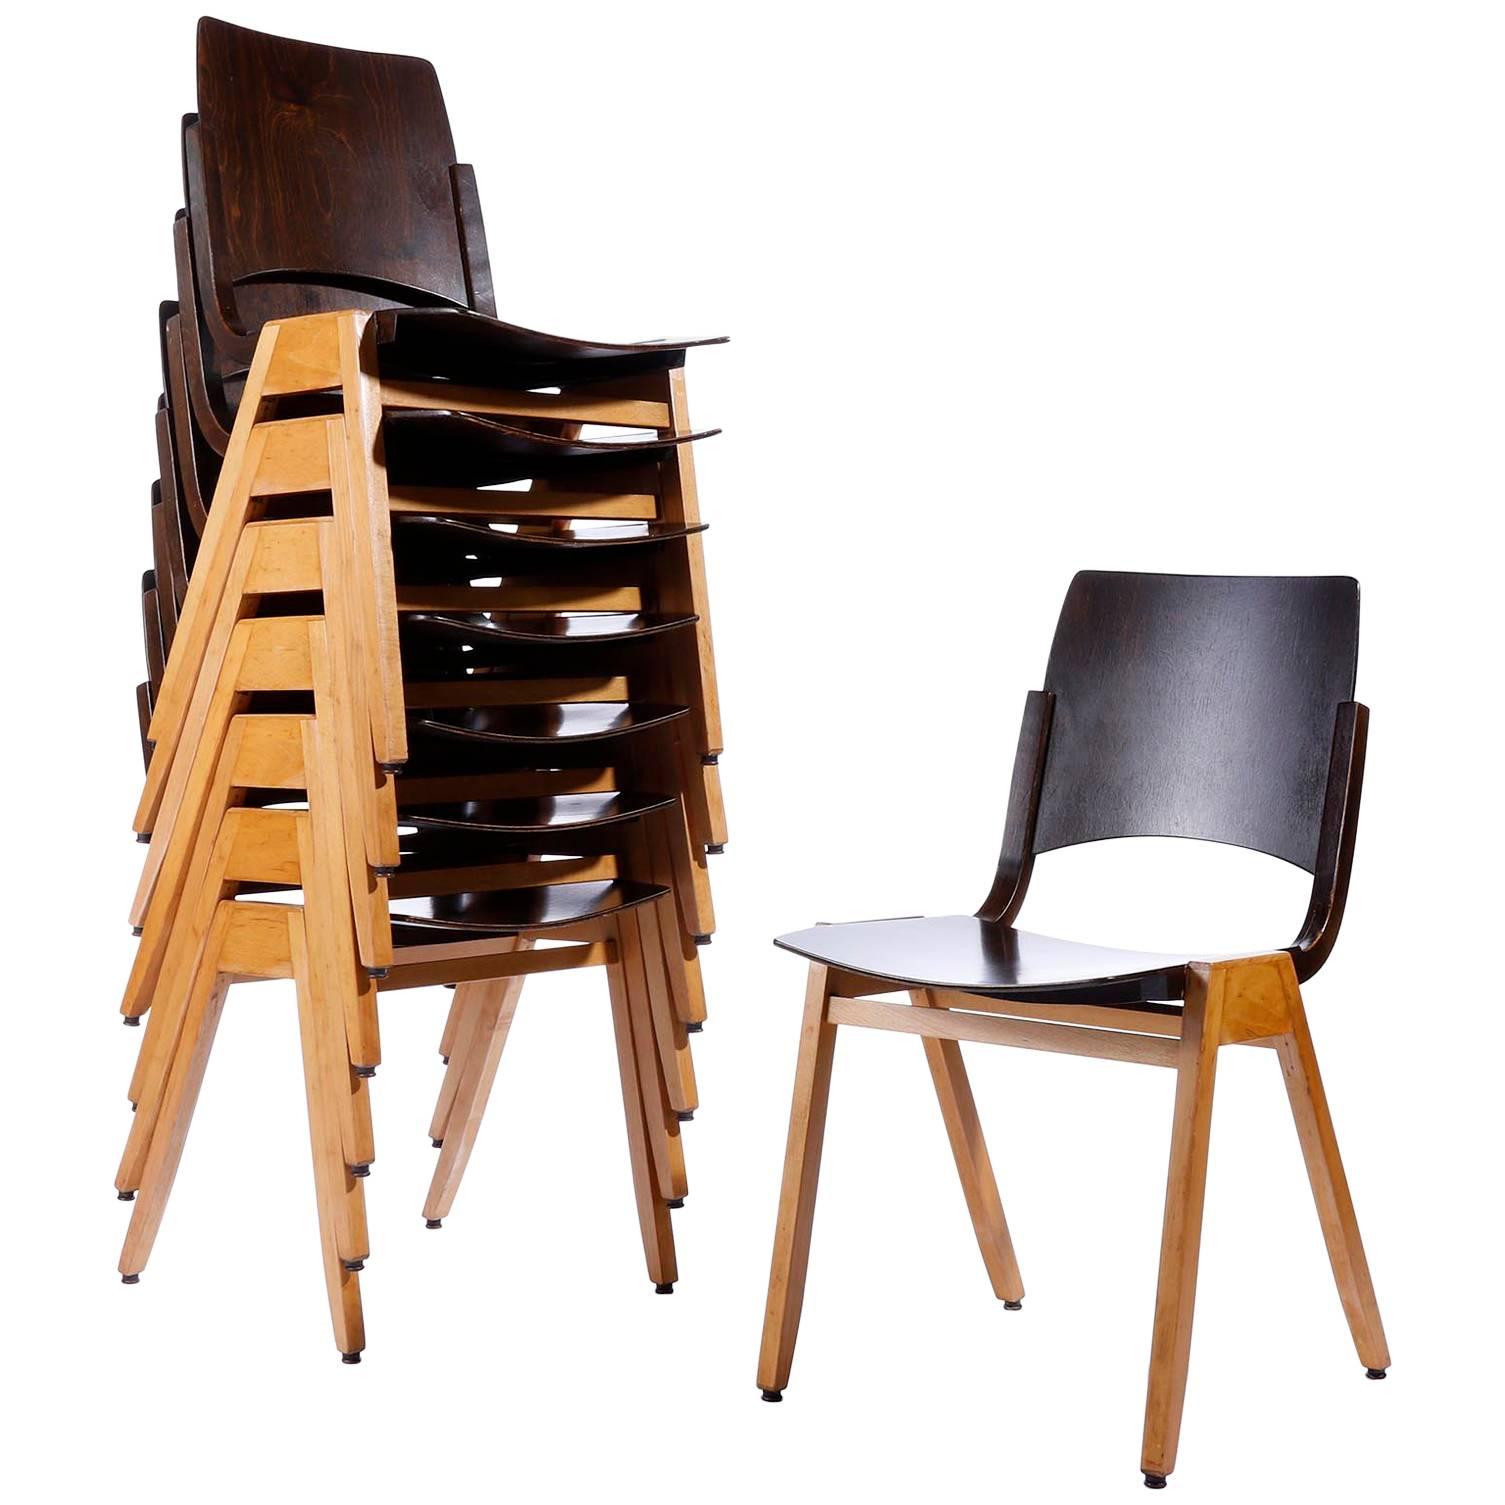 Un ensemble de huit chaises empilables conçues par le professeur Roland Rainer (1910-2004) en 1952 et fabriquées par Emil & Alfred Pollak, Vienne.
Roland Rainer a utilisé ces chaises pour l'hôtel de ville de Vienne 